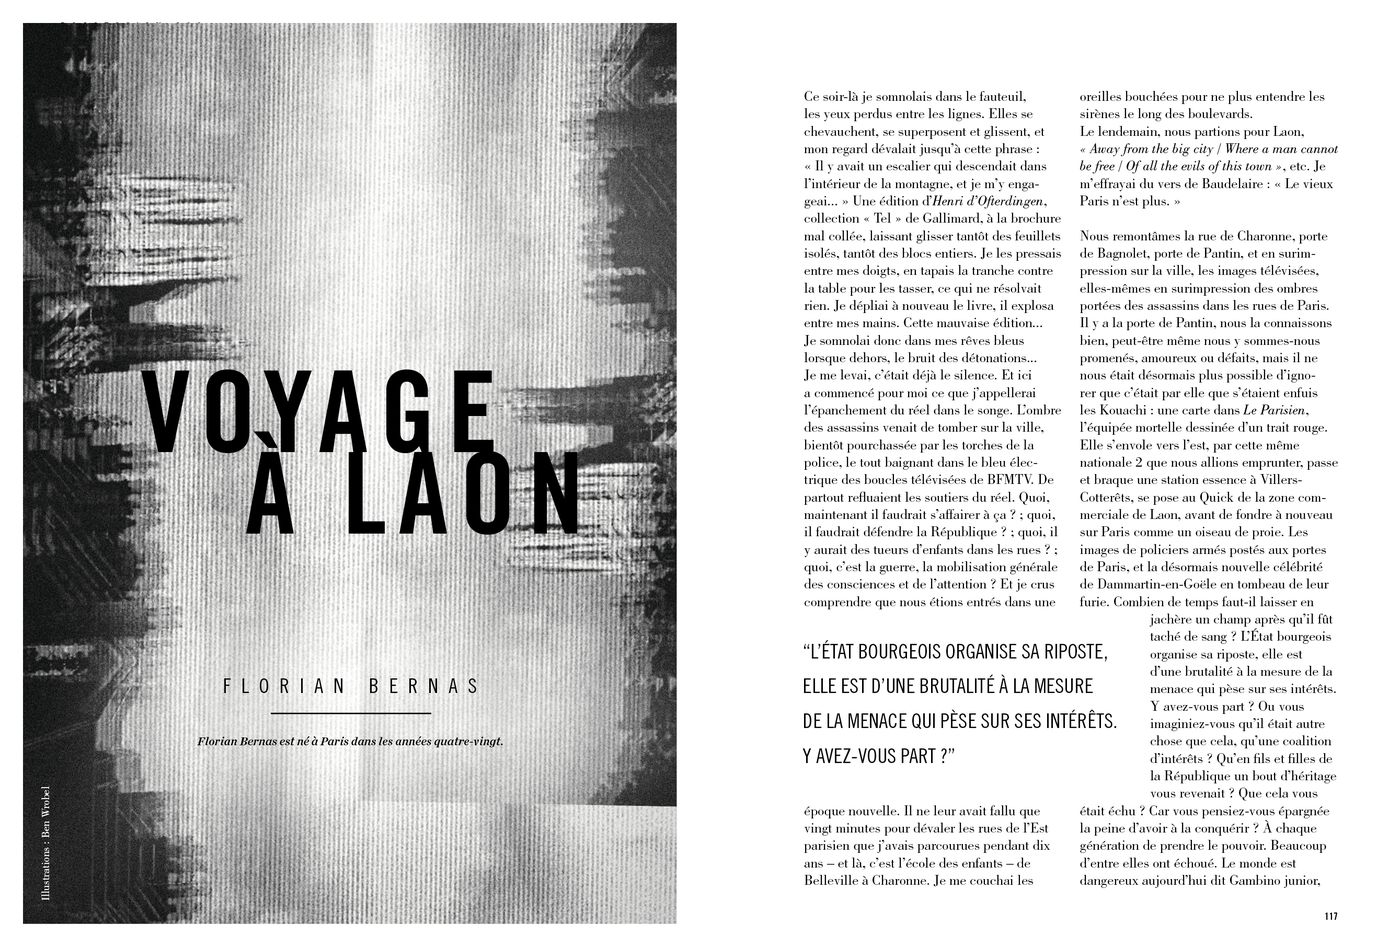 Possession Immédiate Volume 5 - Texte de Florian Bernas, Voyage à Laon